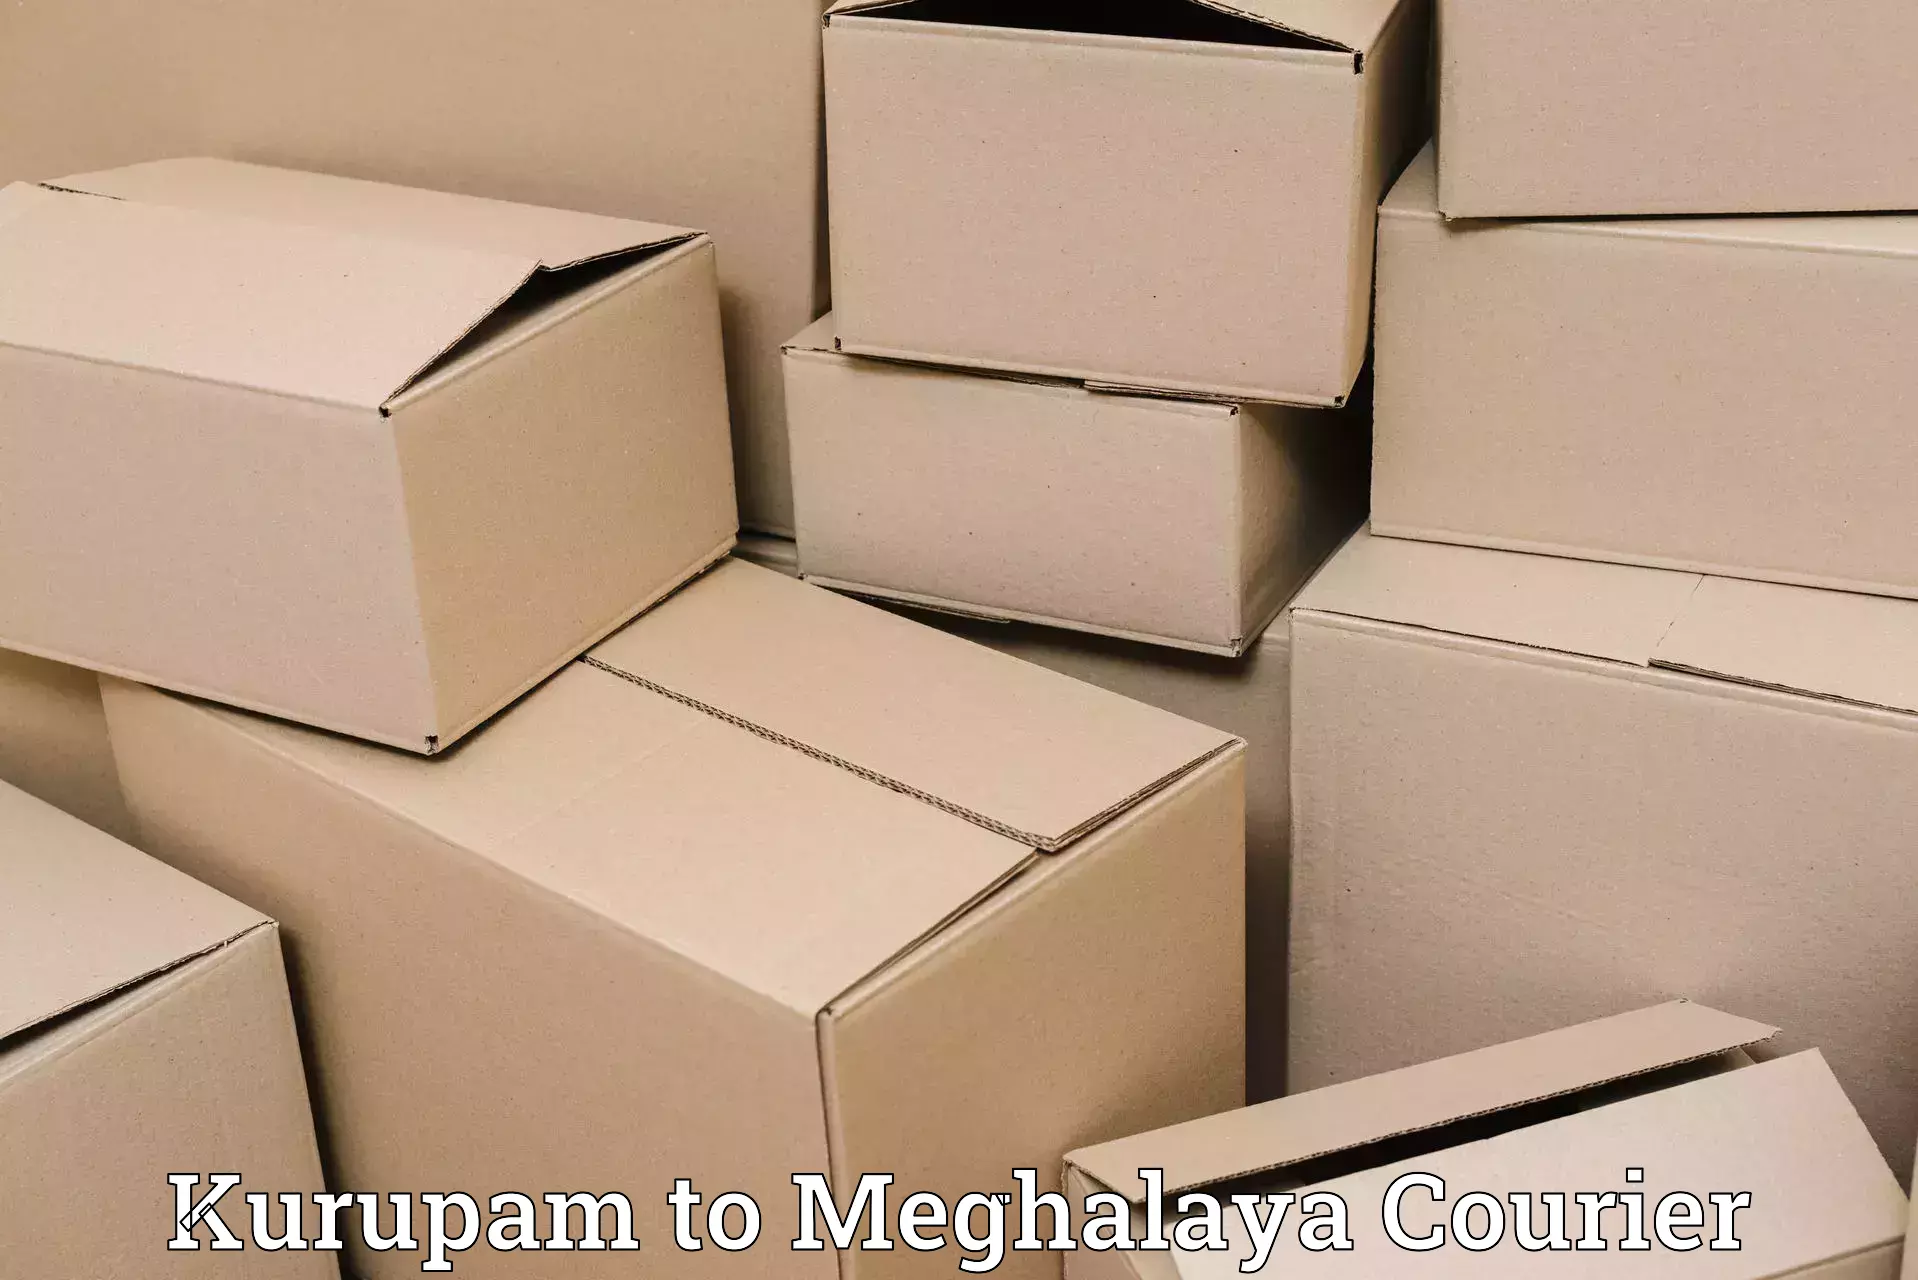 Express shipping Kurupam to Meghalaya